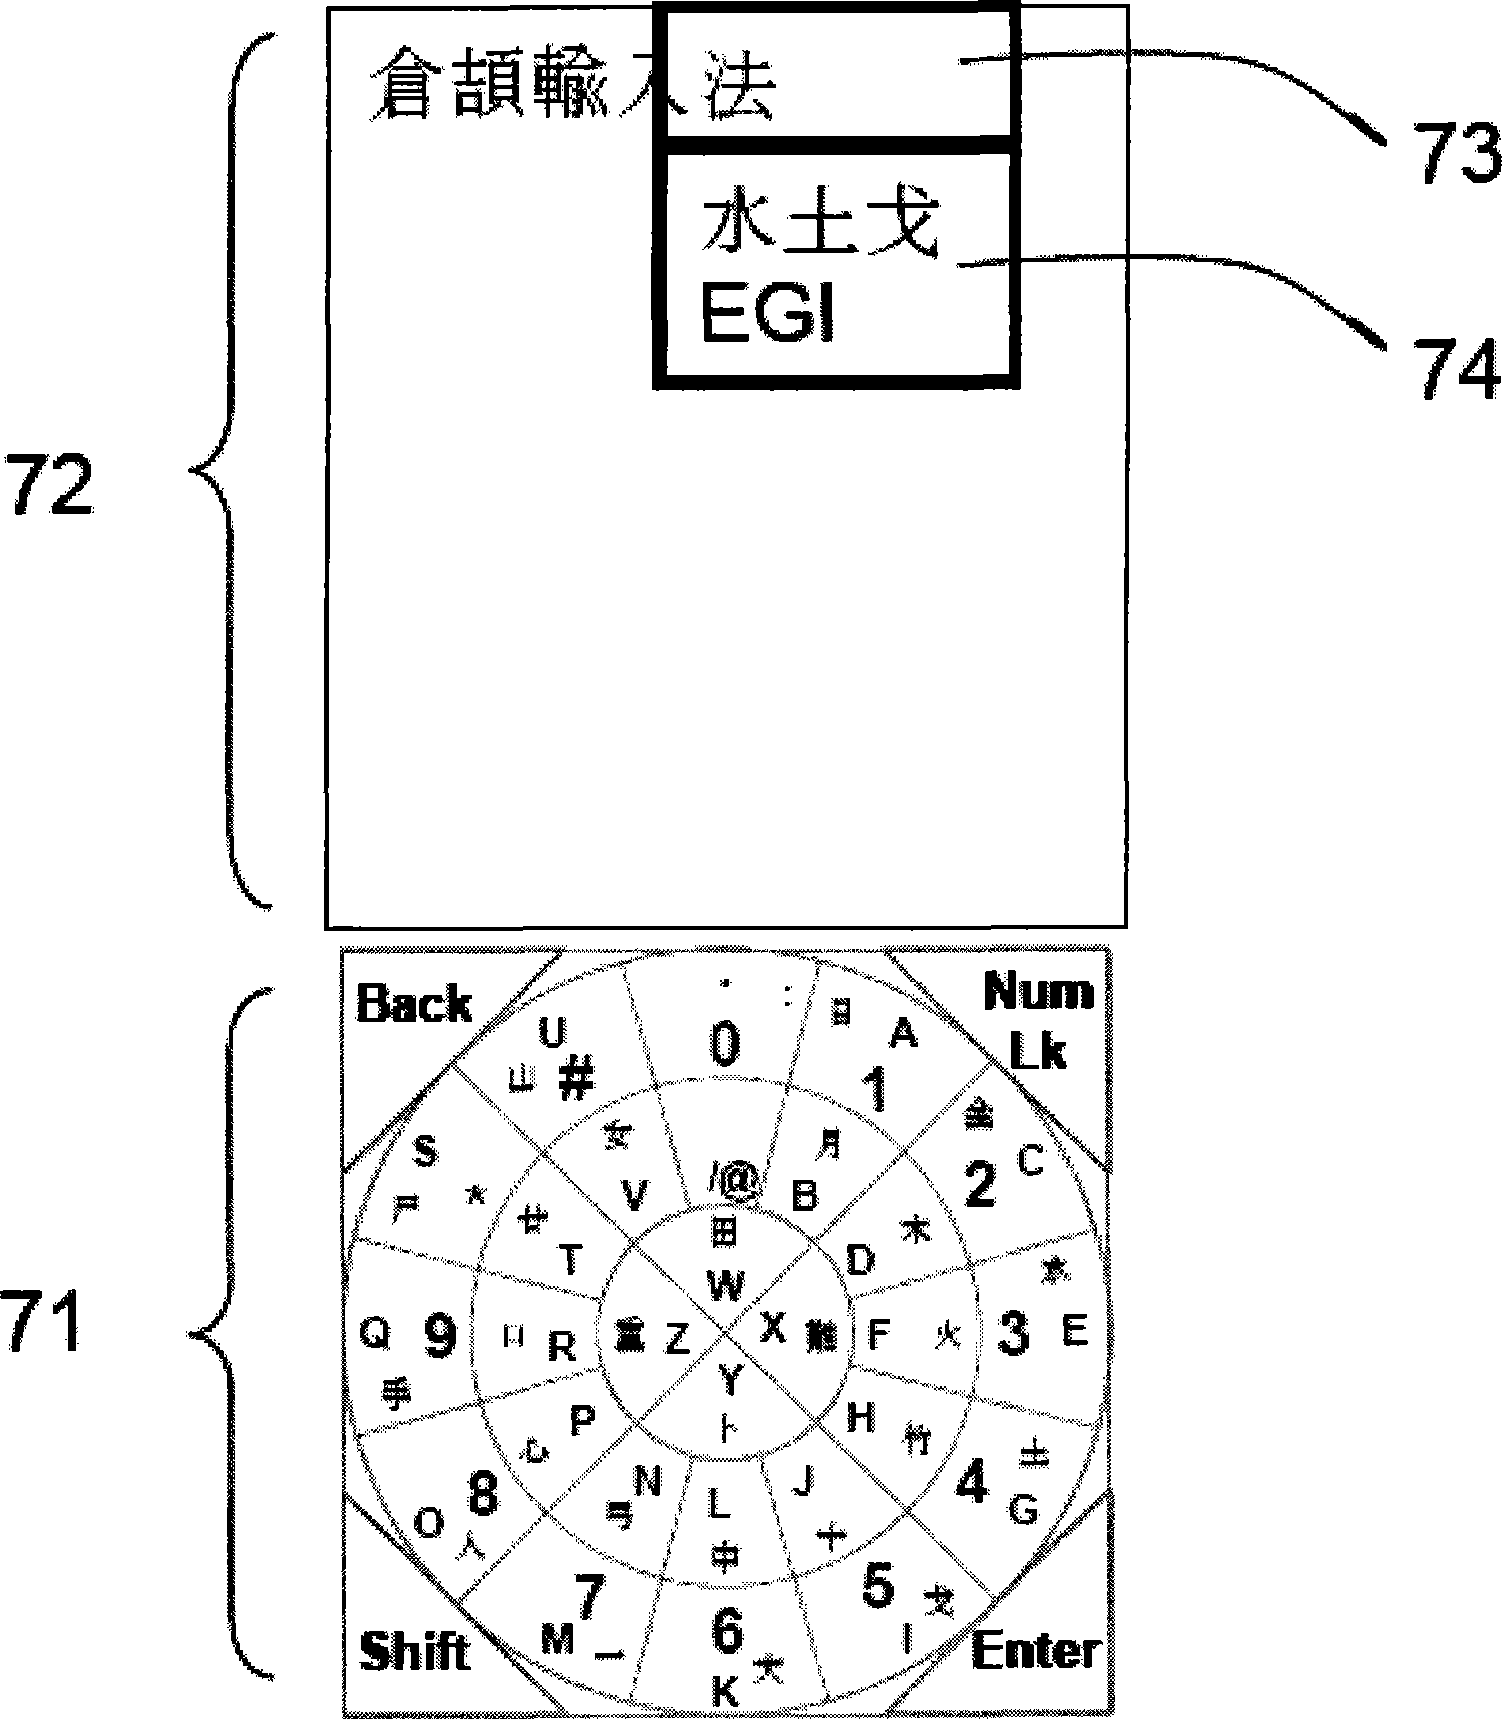 Chinese input system using circular keyboard